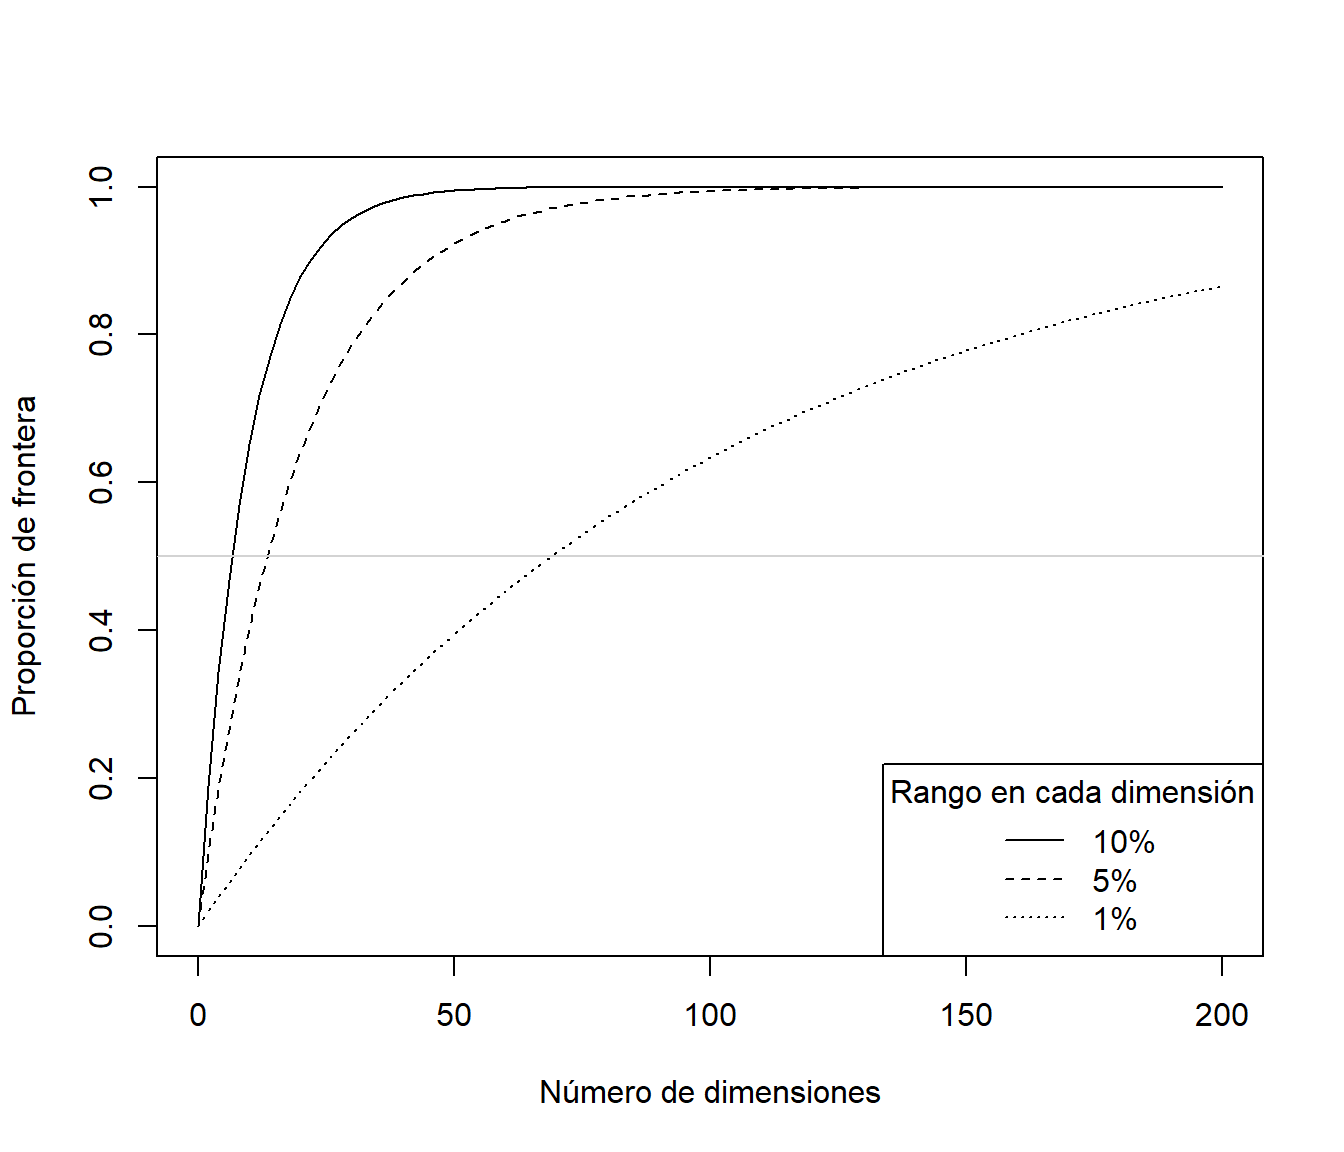 Proporción de "frontera" dependiendo del número de dimensiones y del porcentaje de valores considerados extremos en cada dimensión.